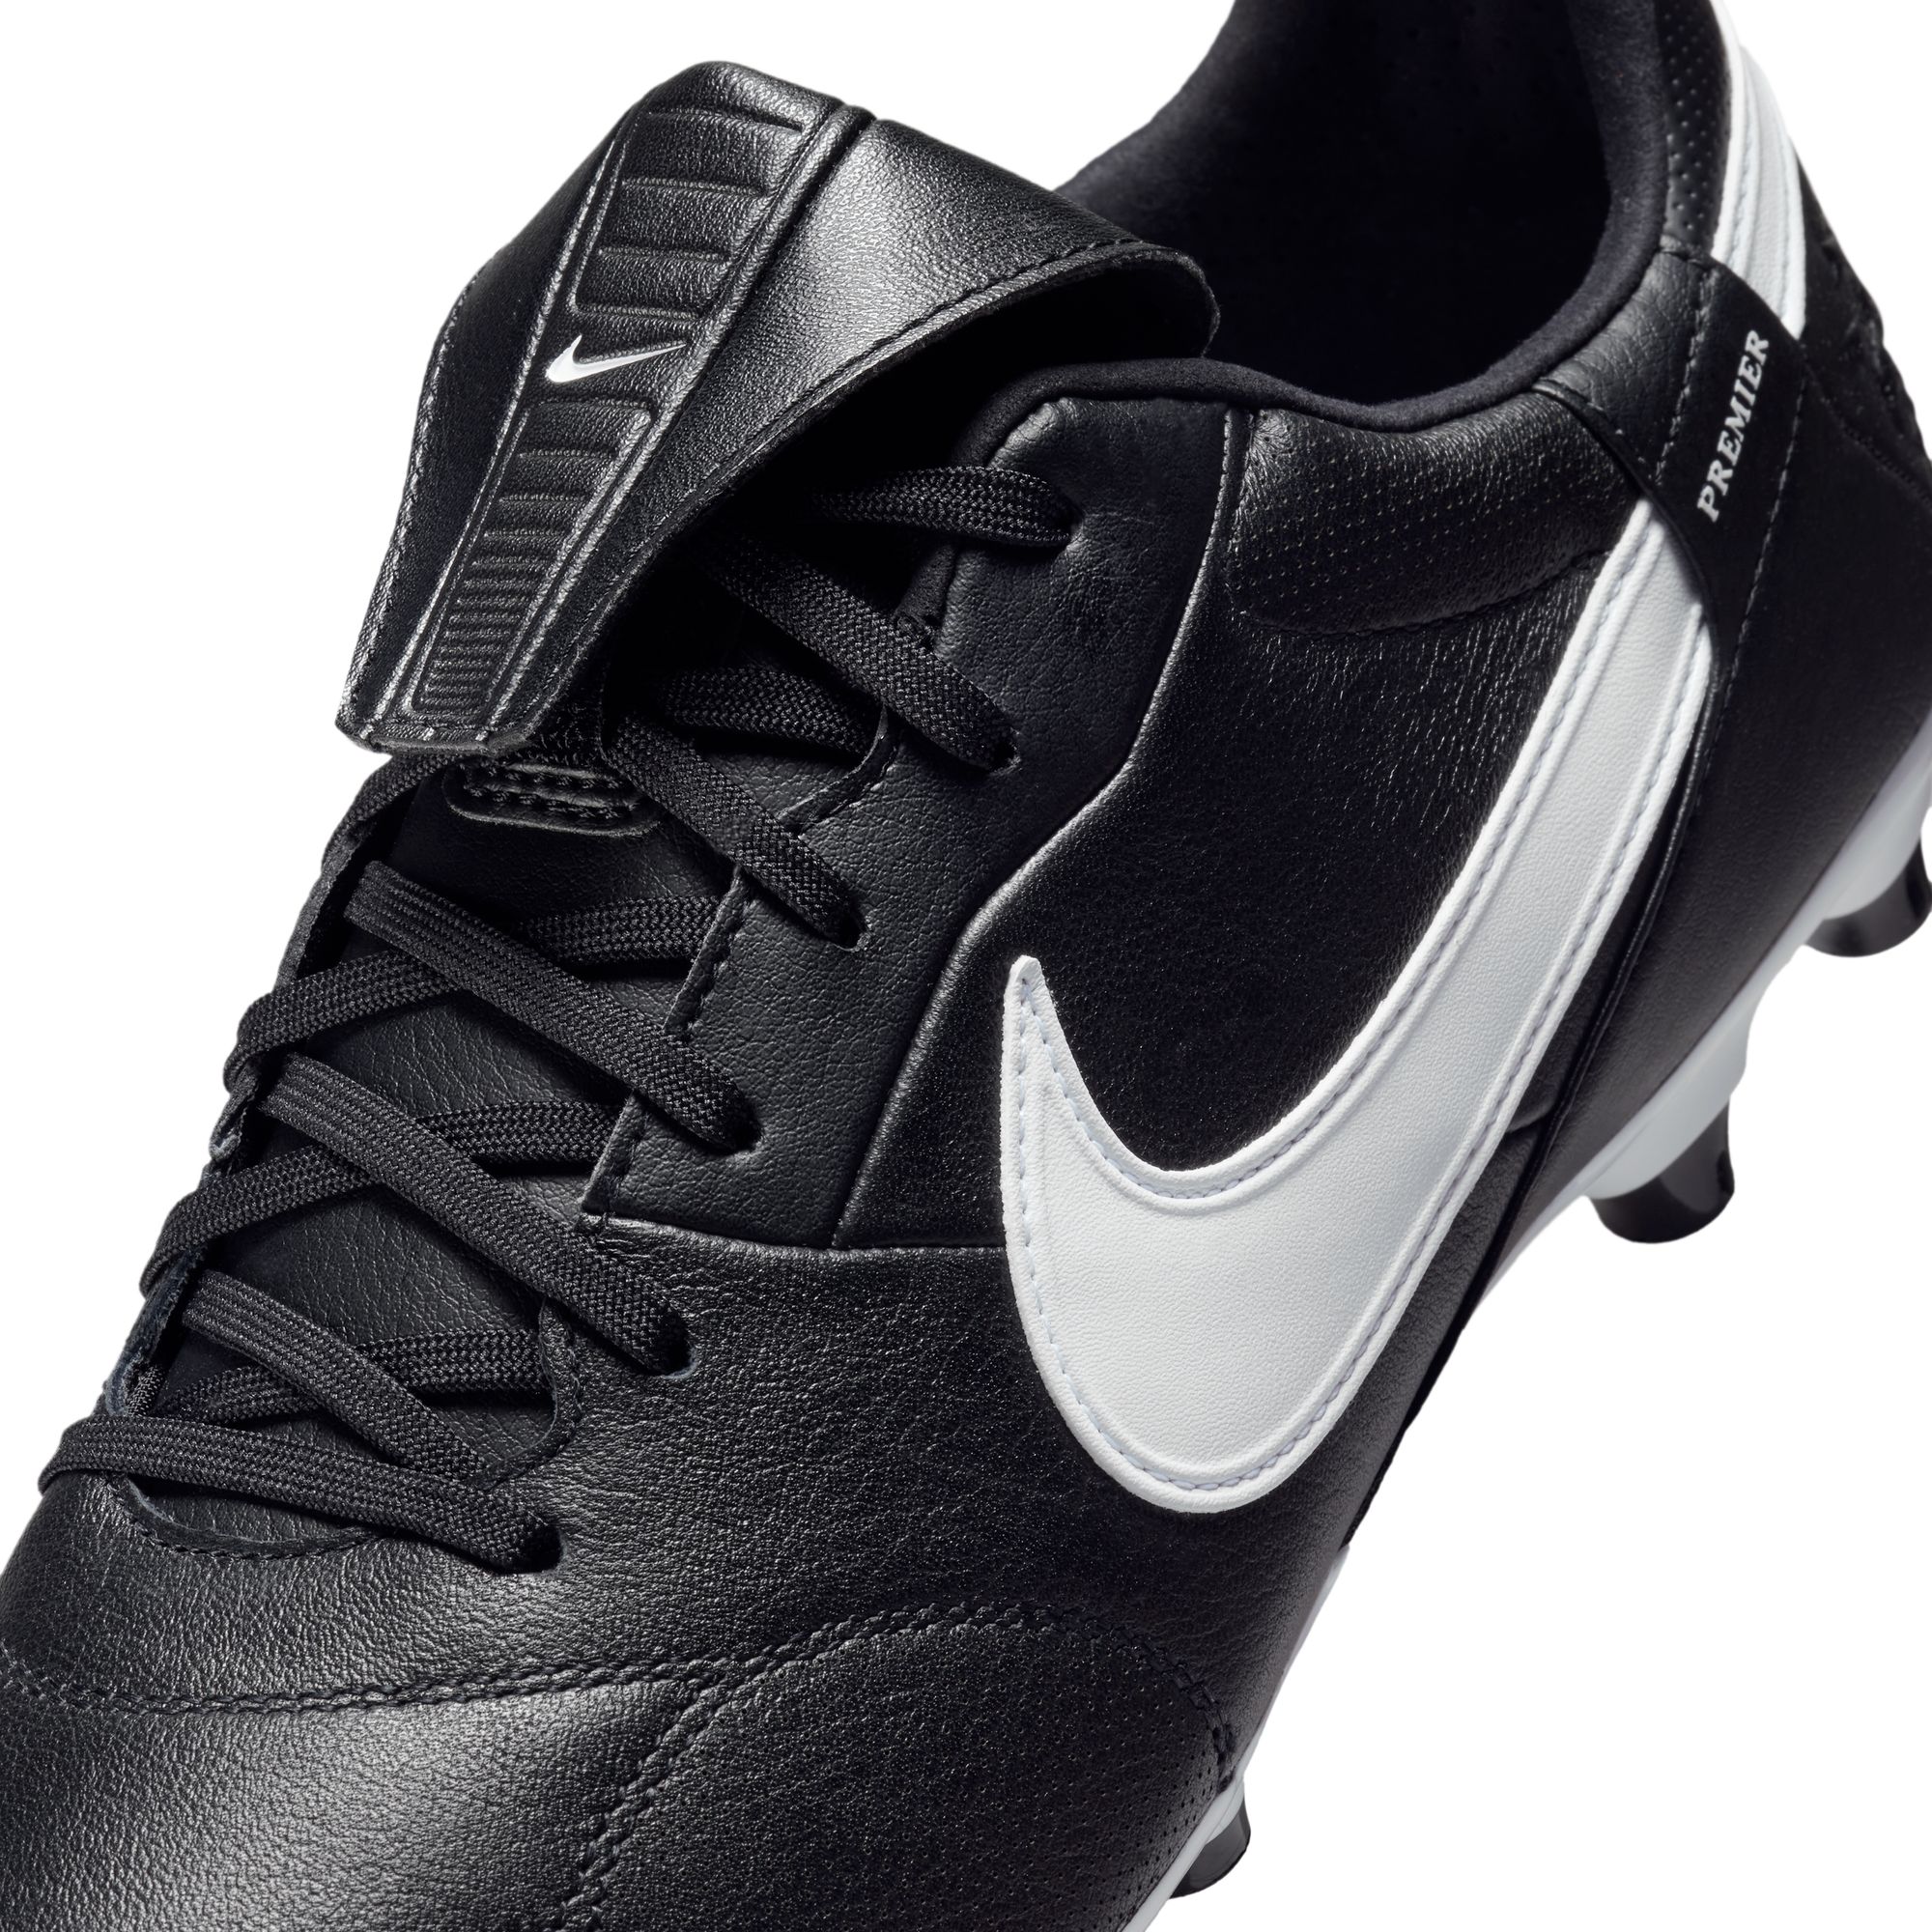 Nike Premier III FG Fotballsko Sort/Hvit